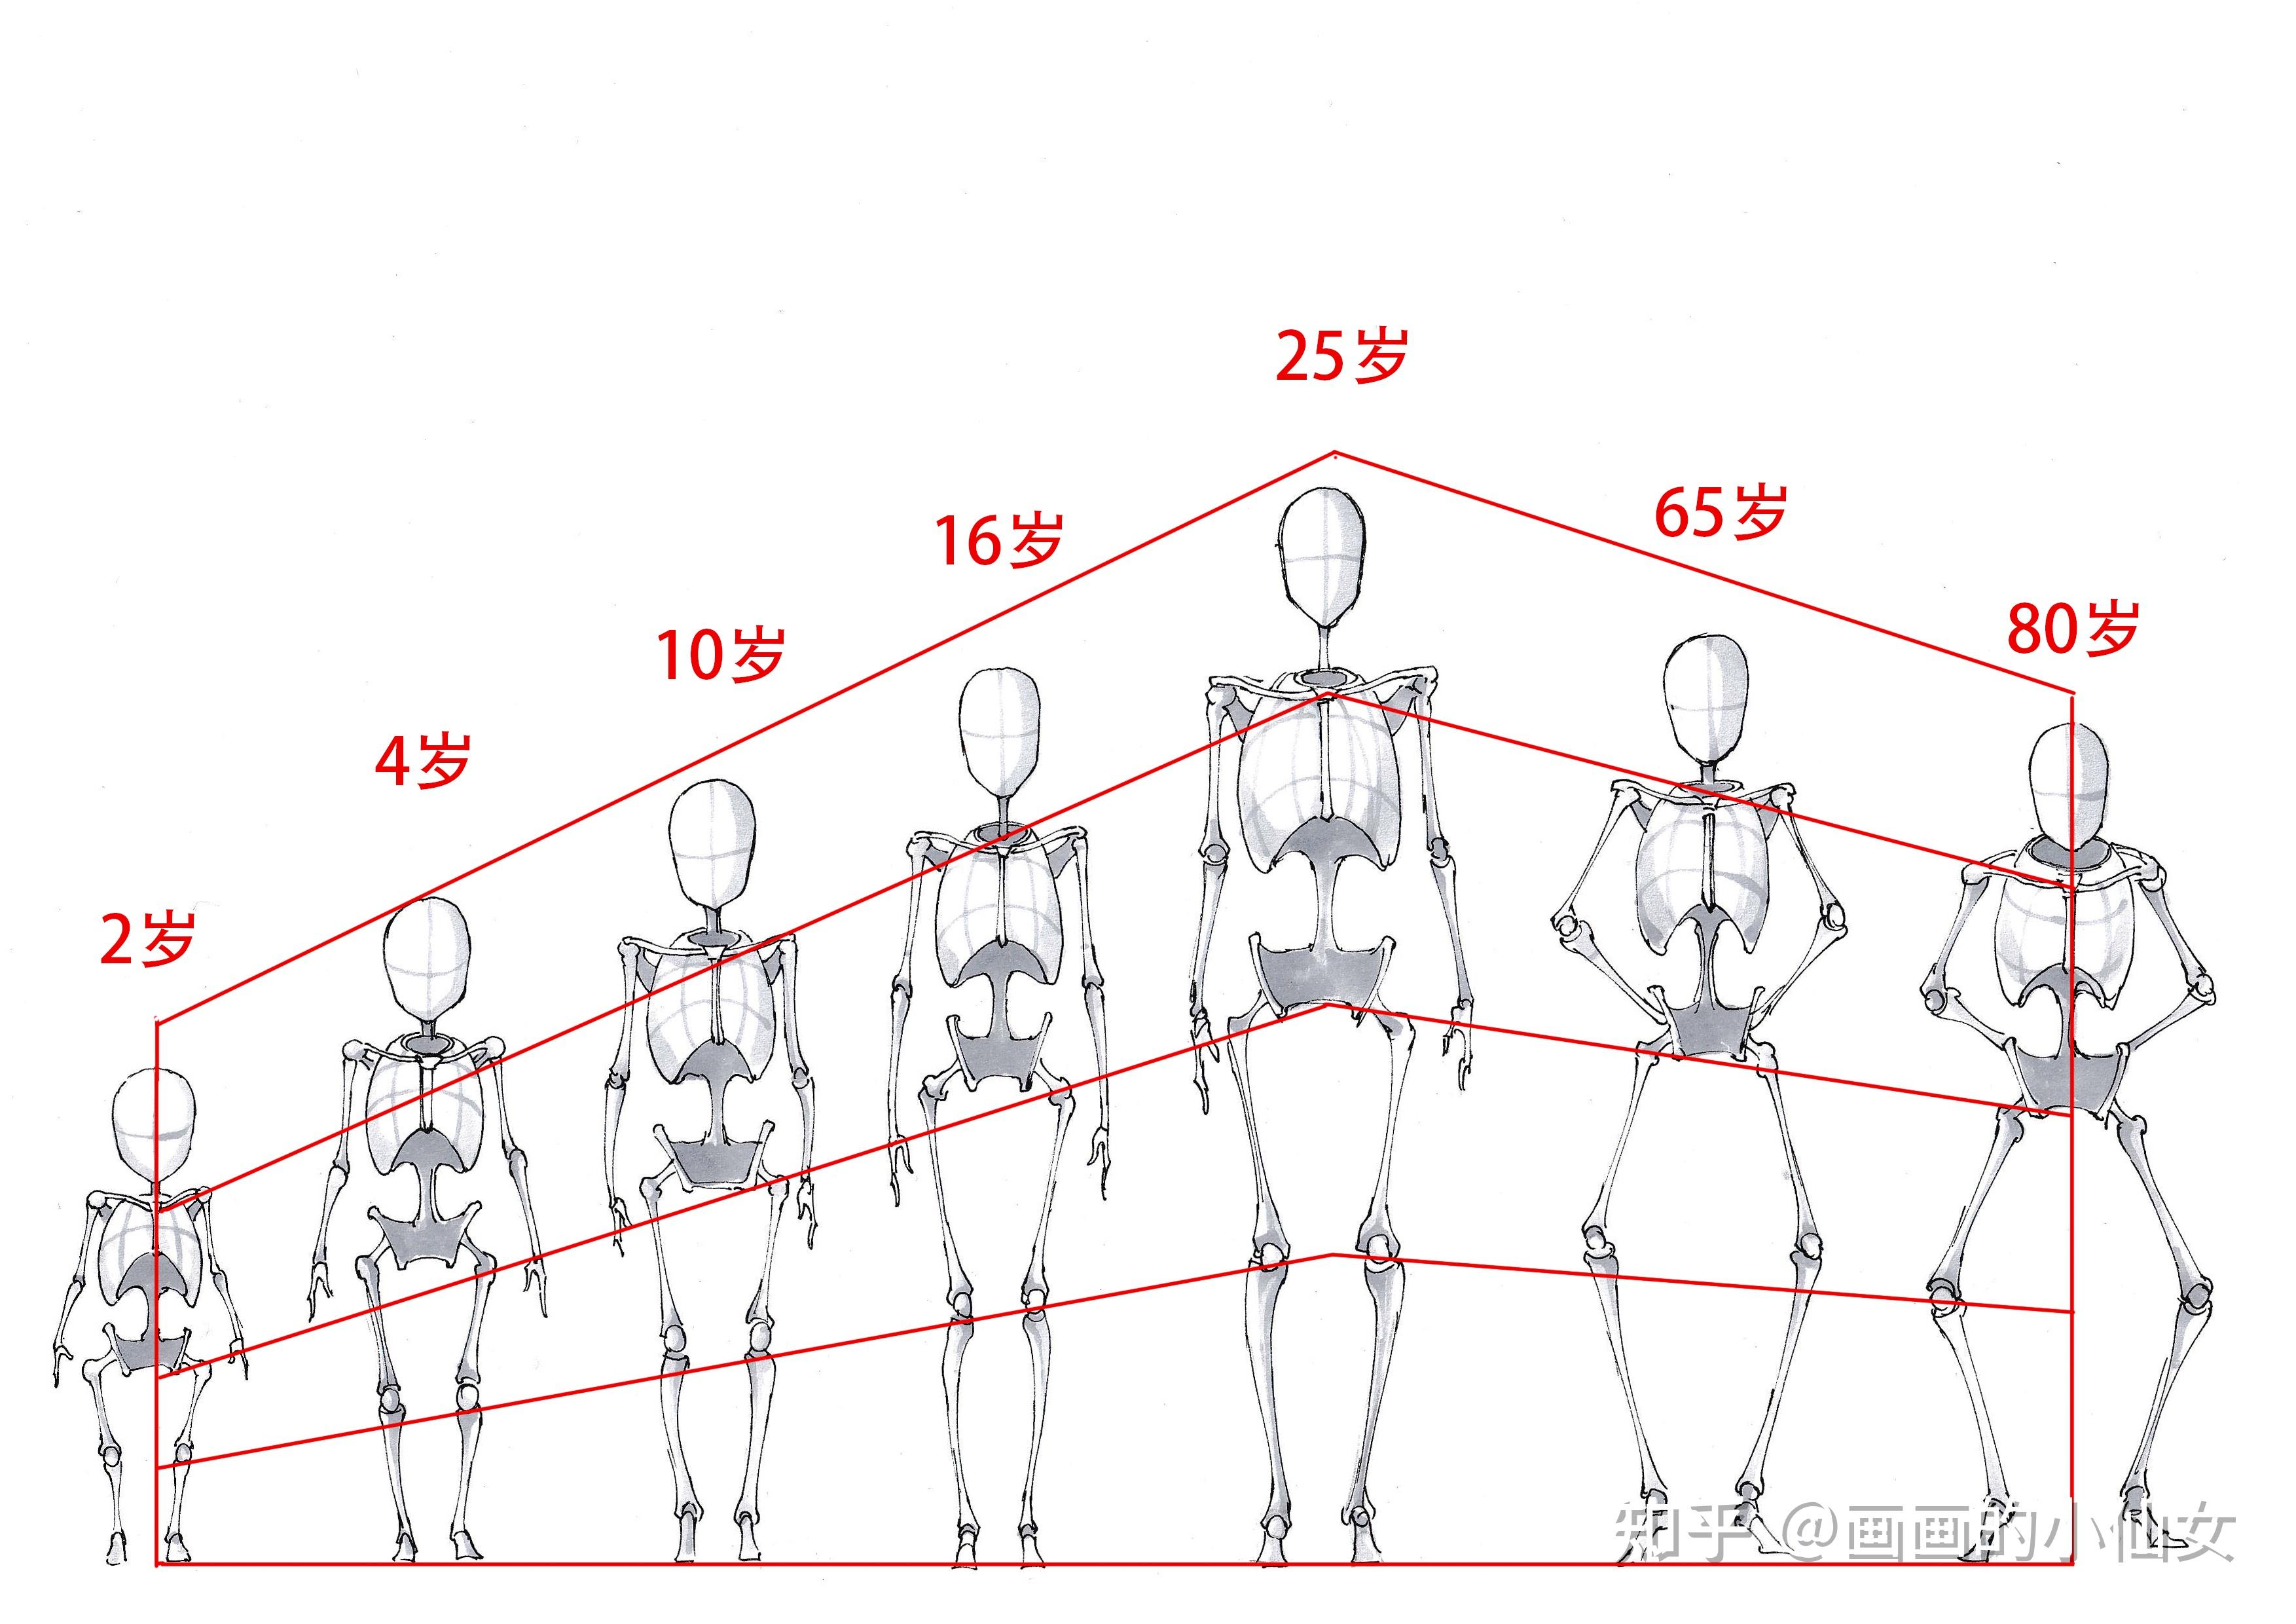 人体的比例不是绝对的,随着年龄的增长,骨骼会有所变化,但相对的位置